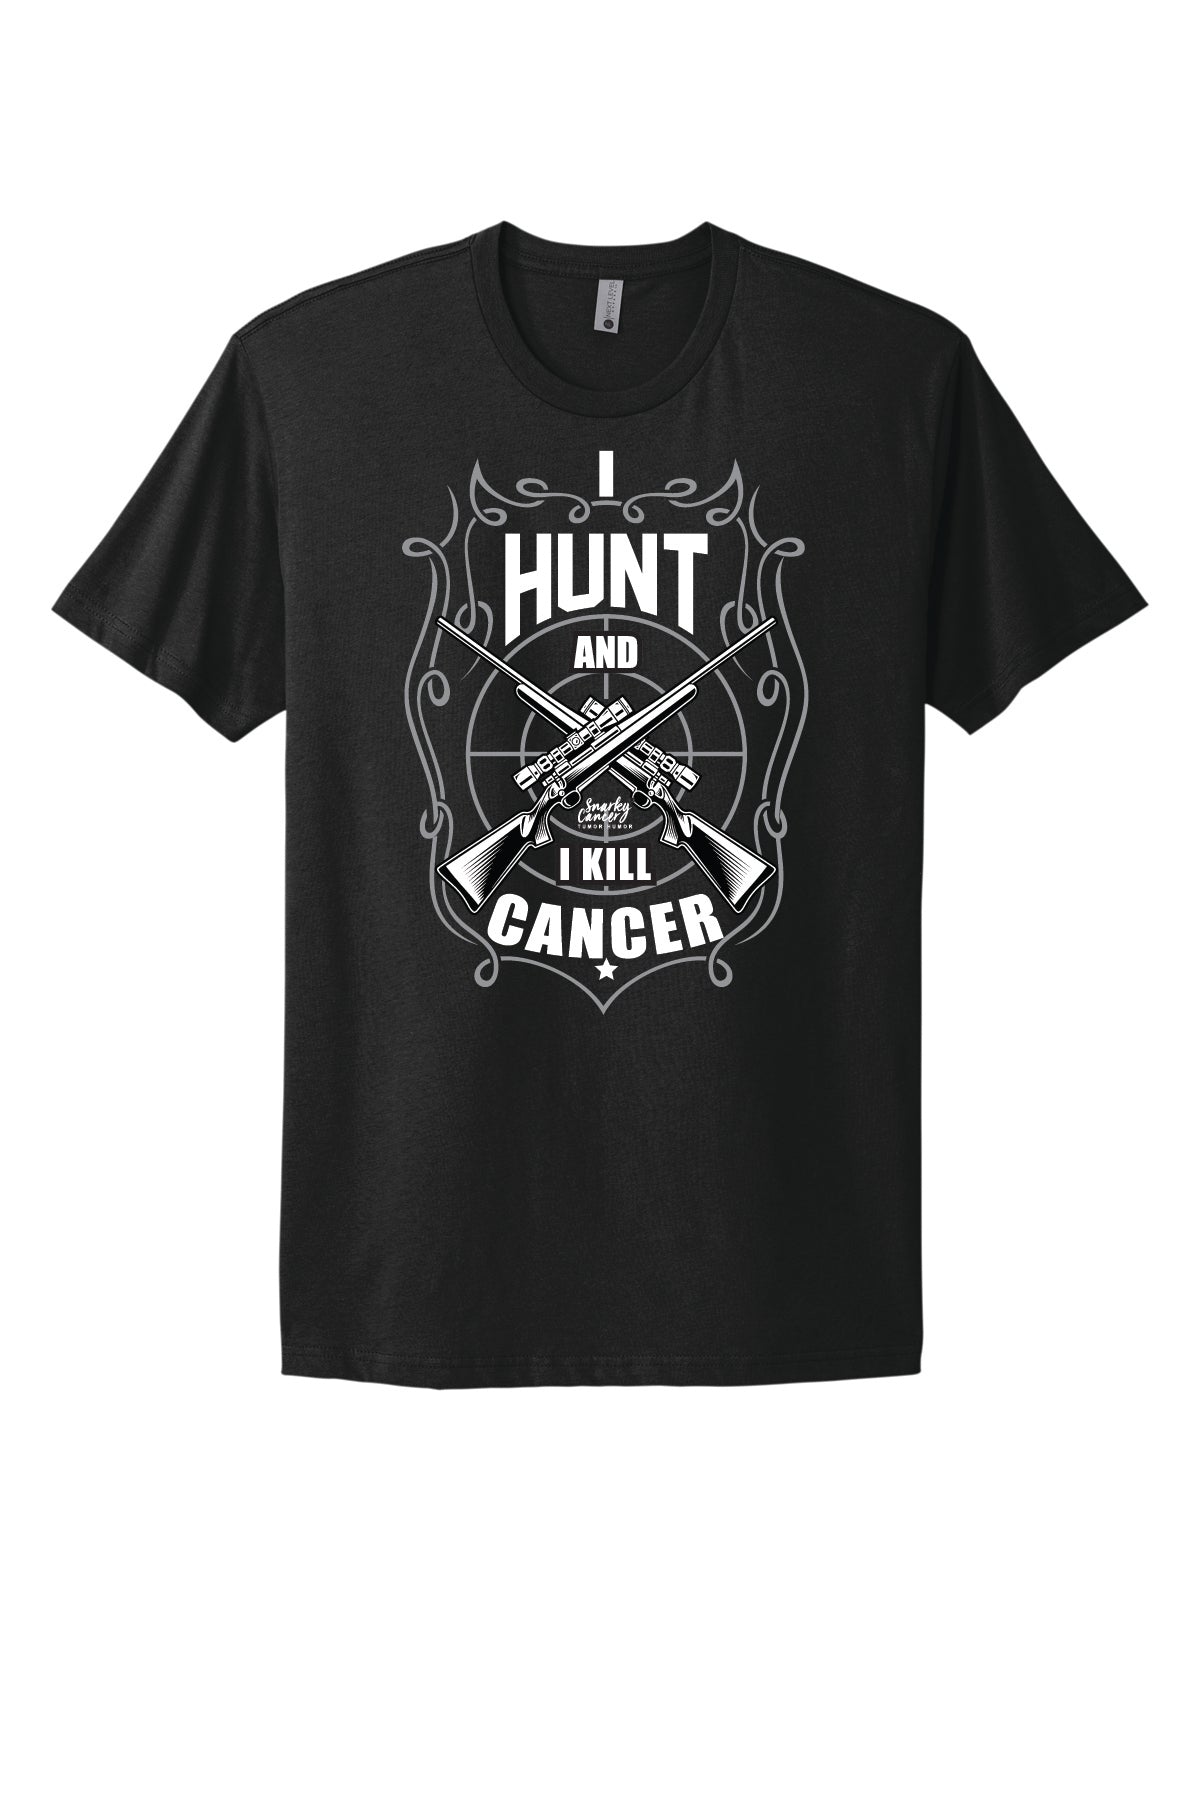 I Hunt and Kill Cancer